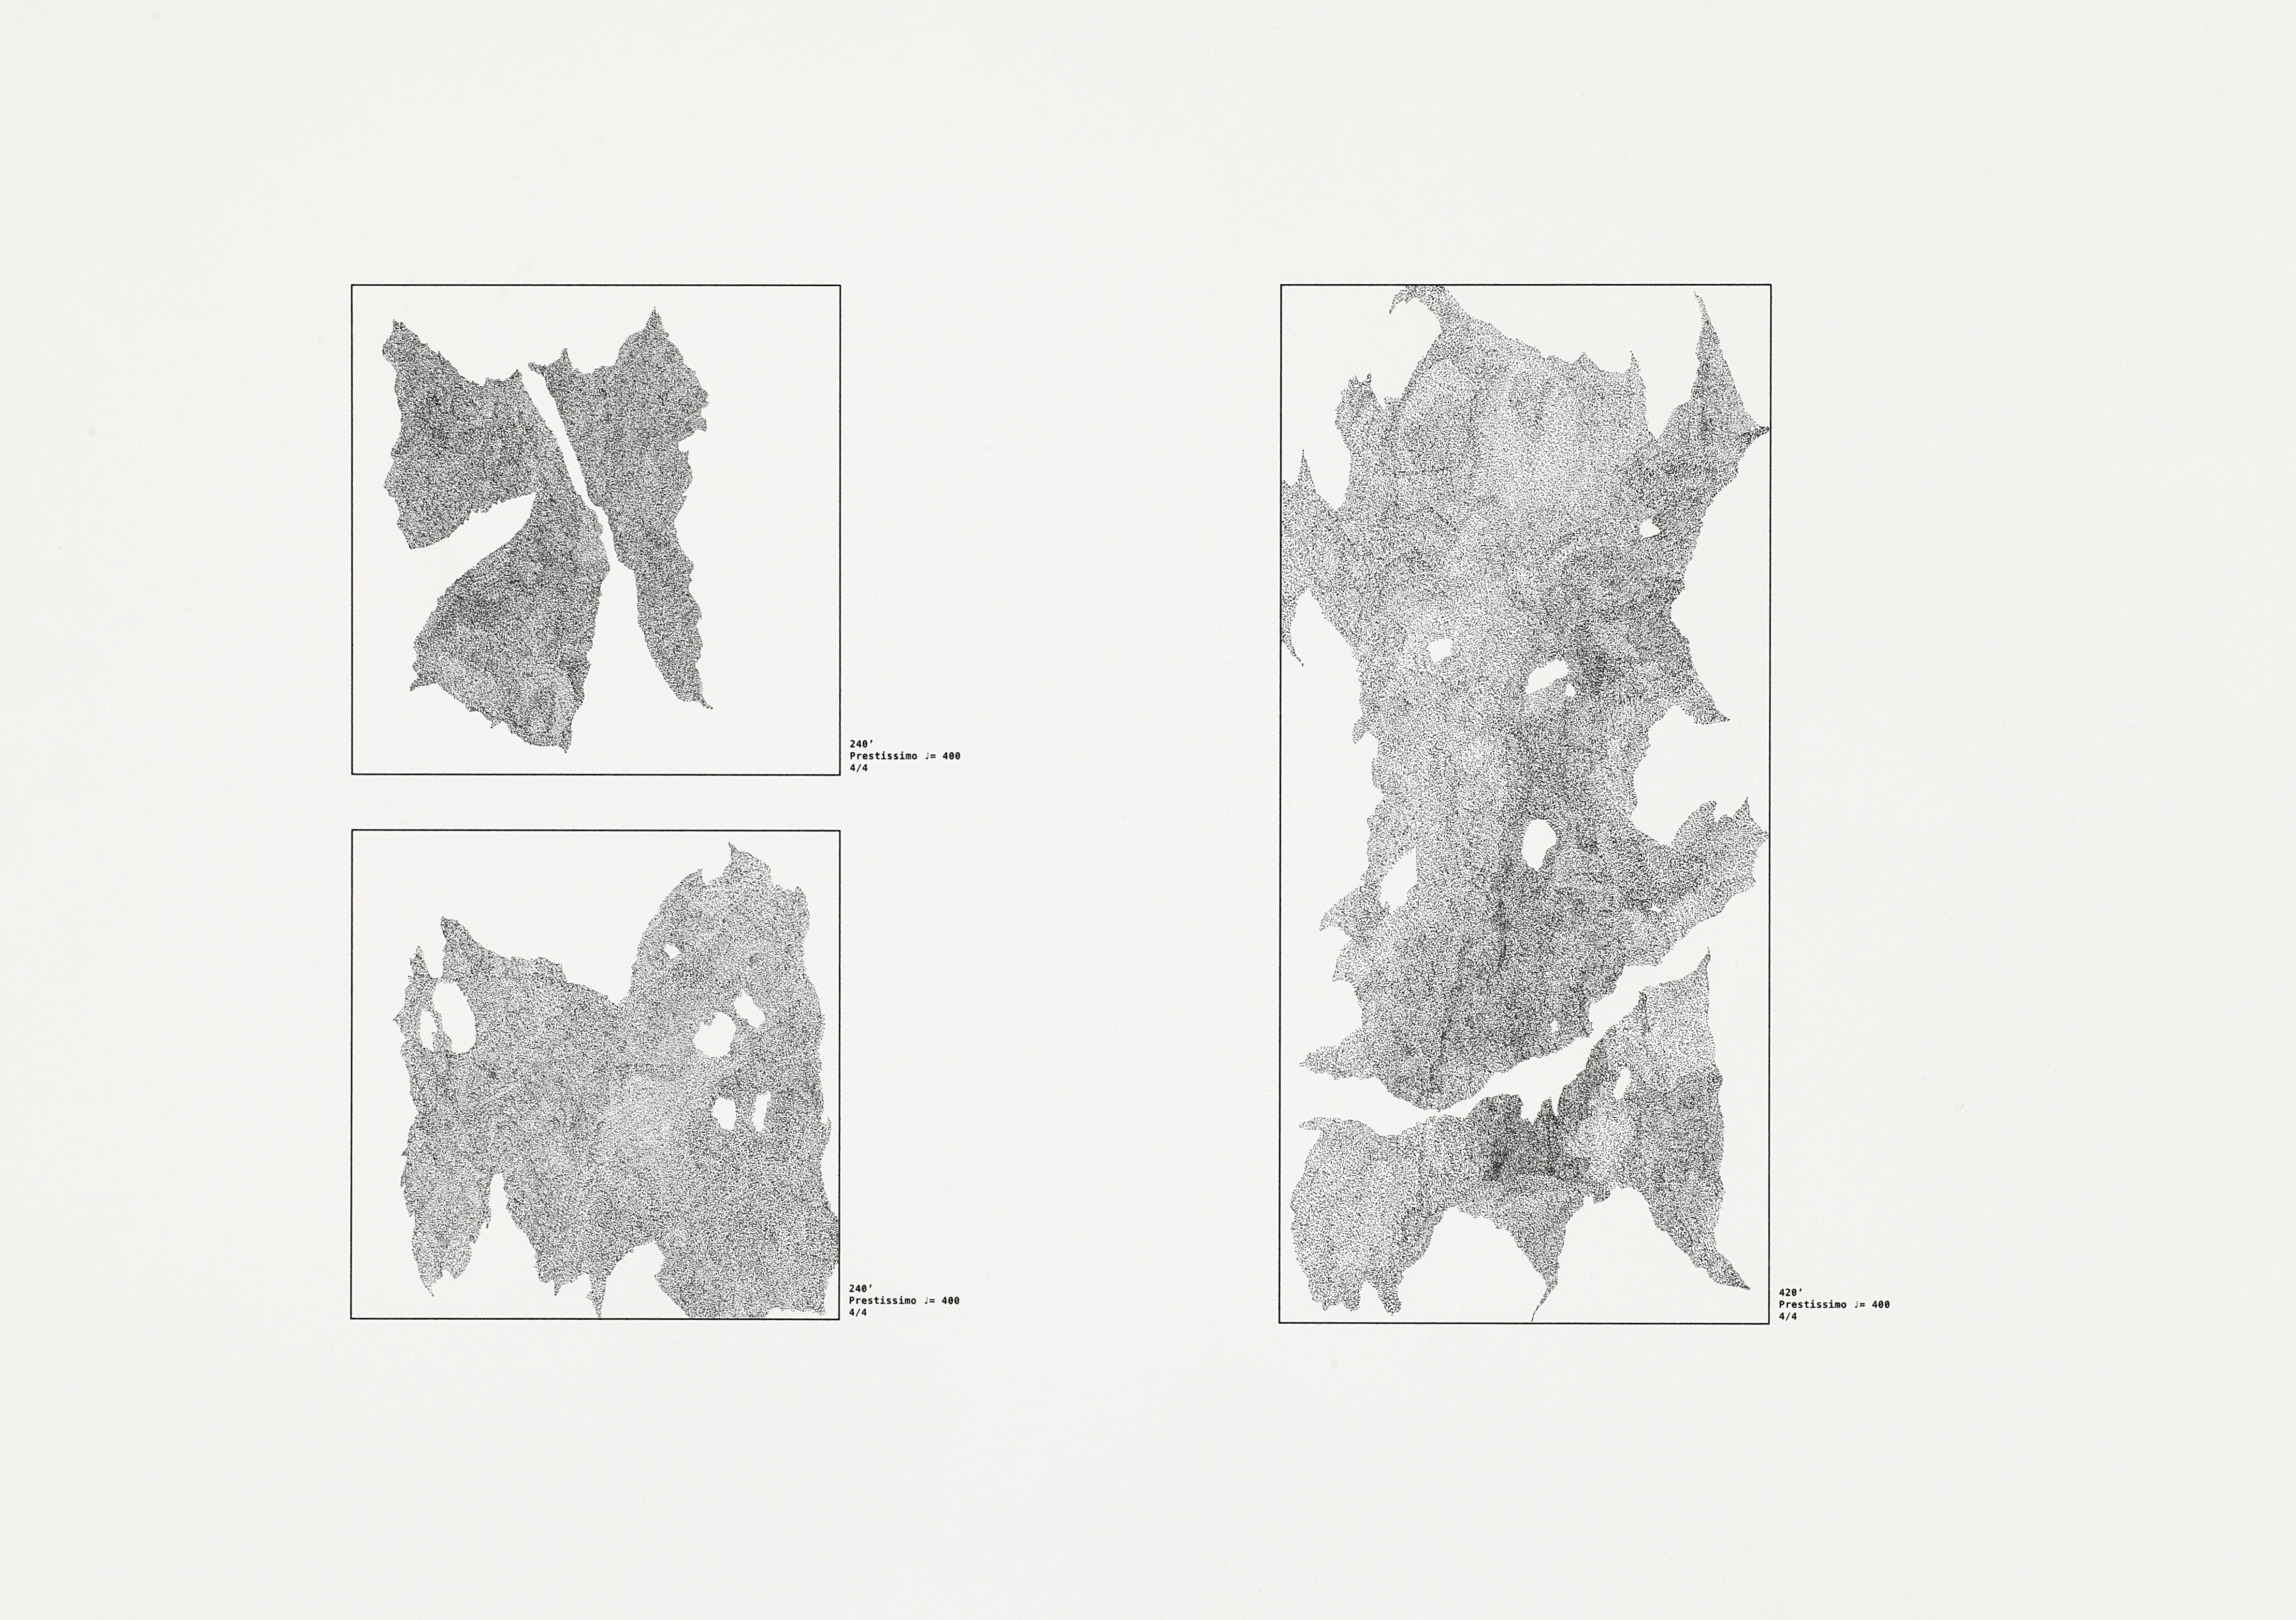 dessin_au_métronome_protocol 2, feutre pigmentaire et métronome sur papier cotton, 31cm×41cm, 2016